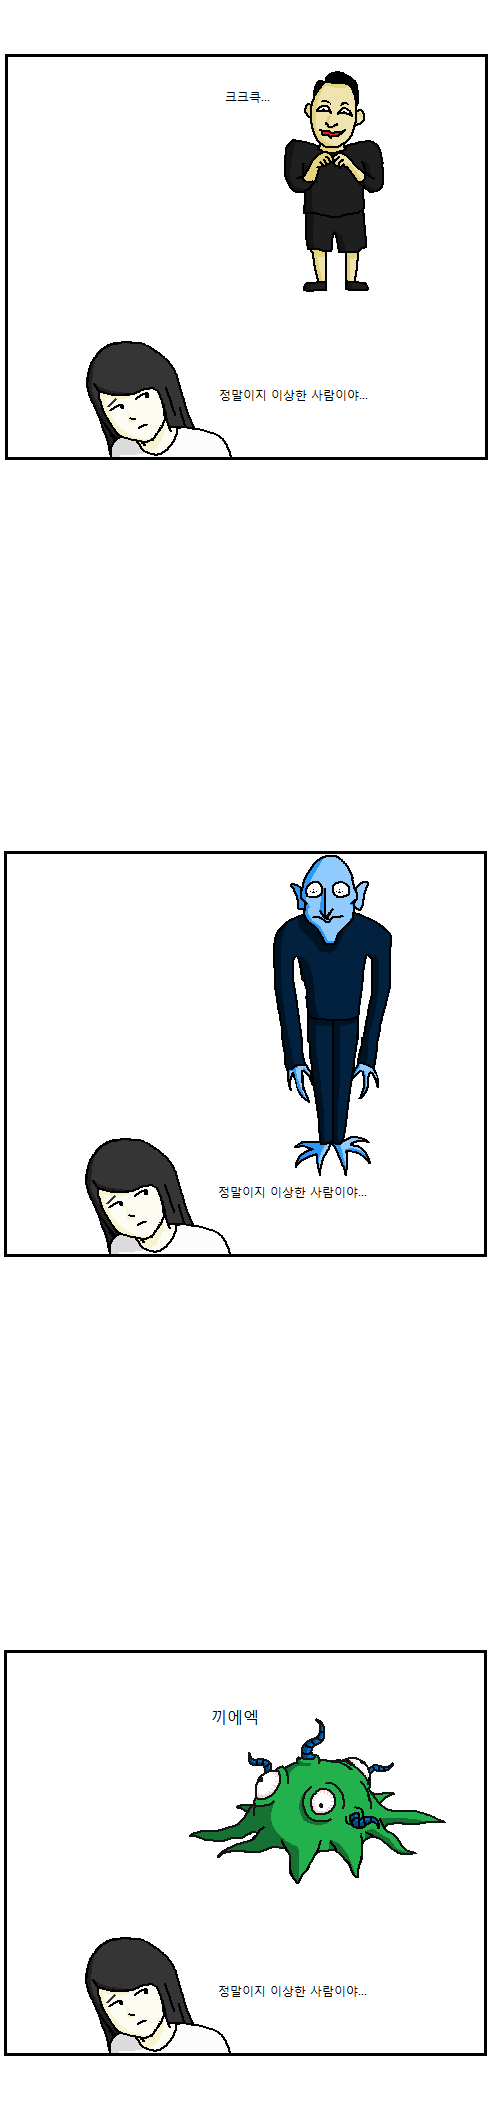 이토준지 만화 특징.png